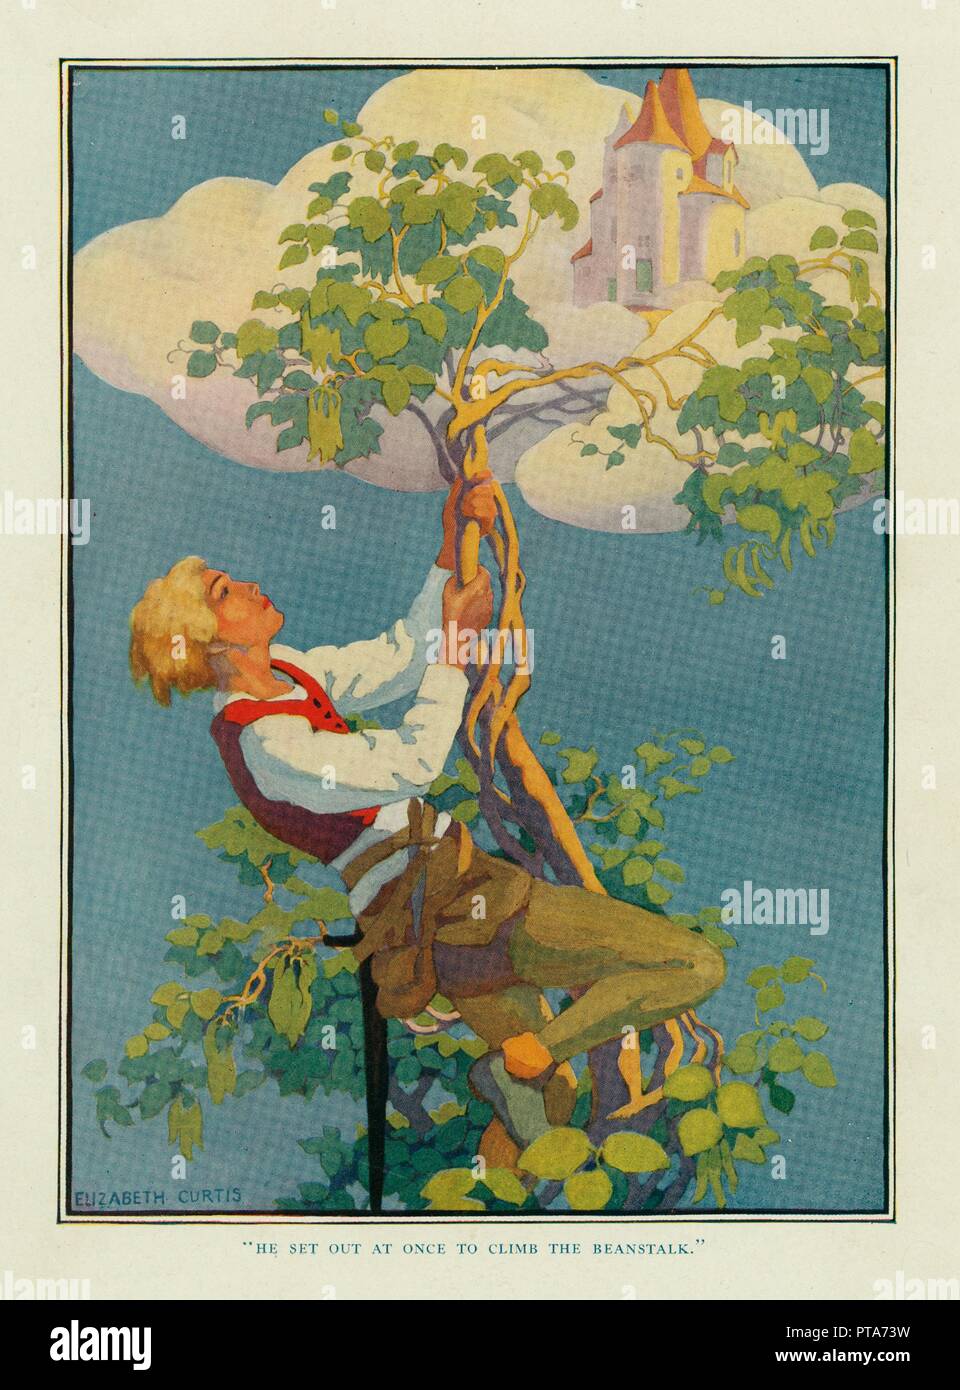 Partì alla volta di scalare la beanstalk, da Stoke's Wonder libro di fiabe, pub. 1917. Creatore: Elizabeth Curtis. Foto Stock